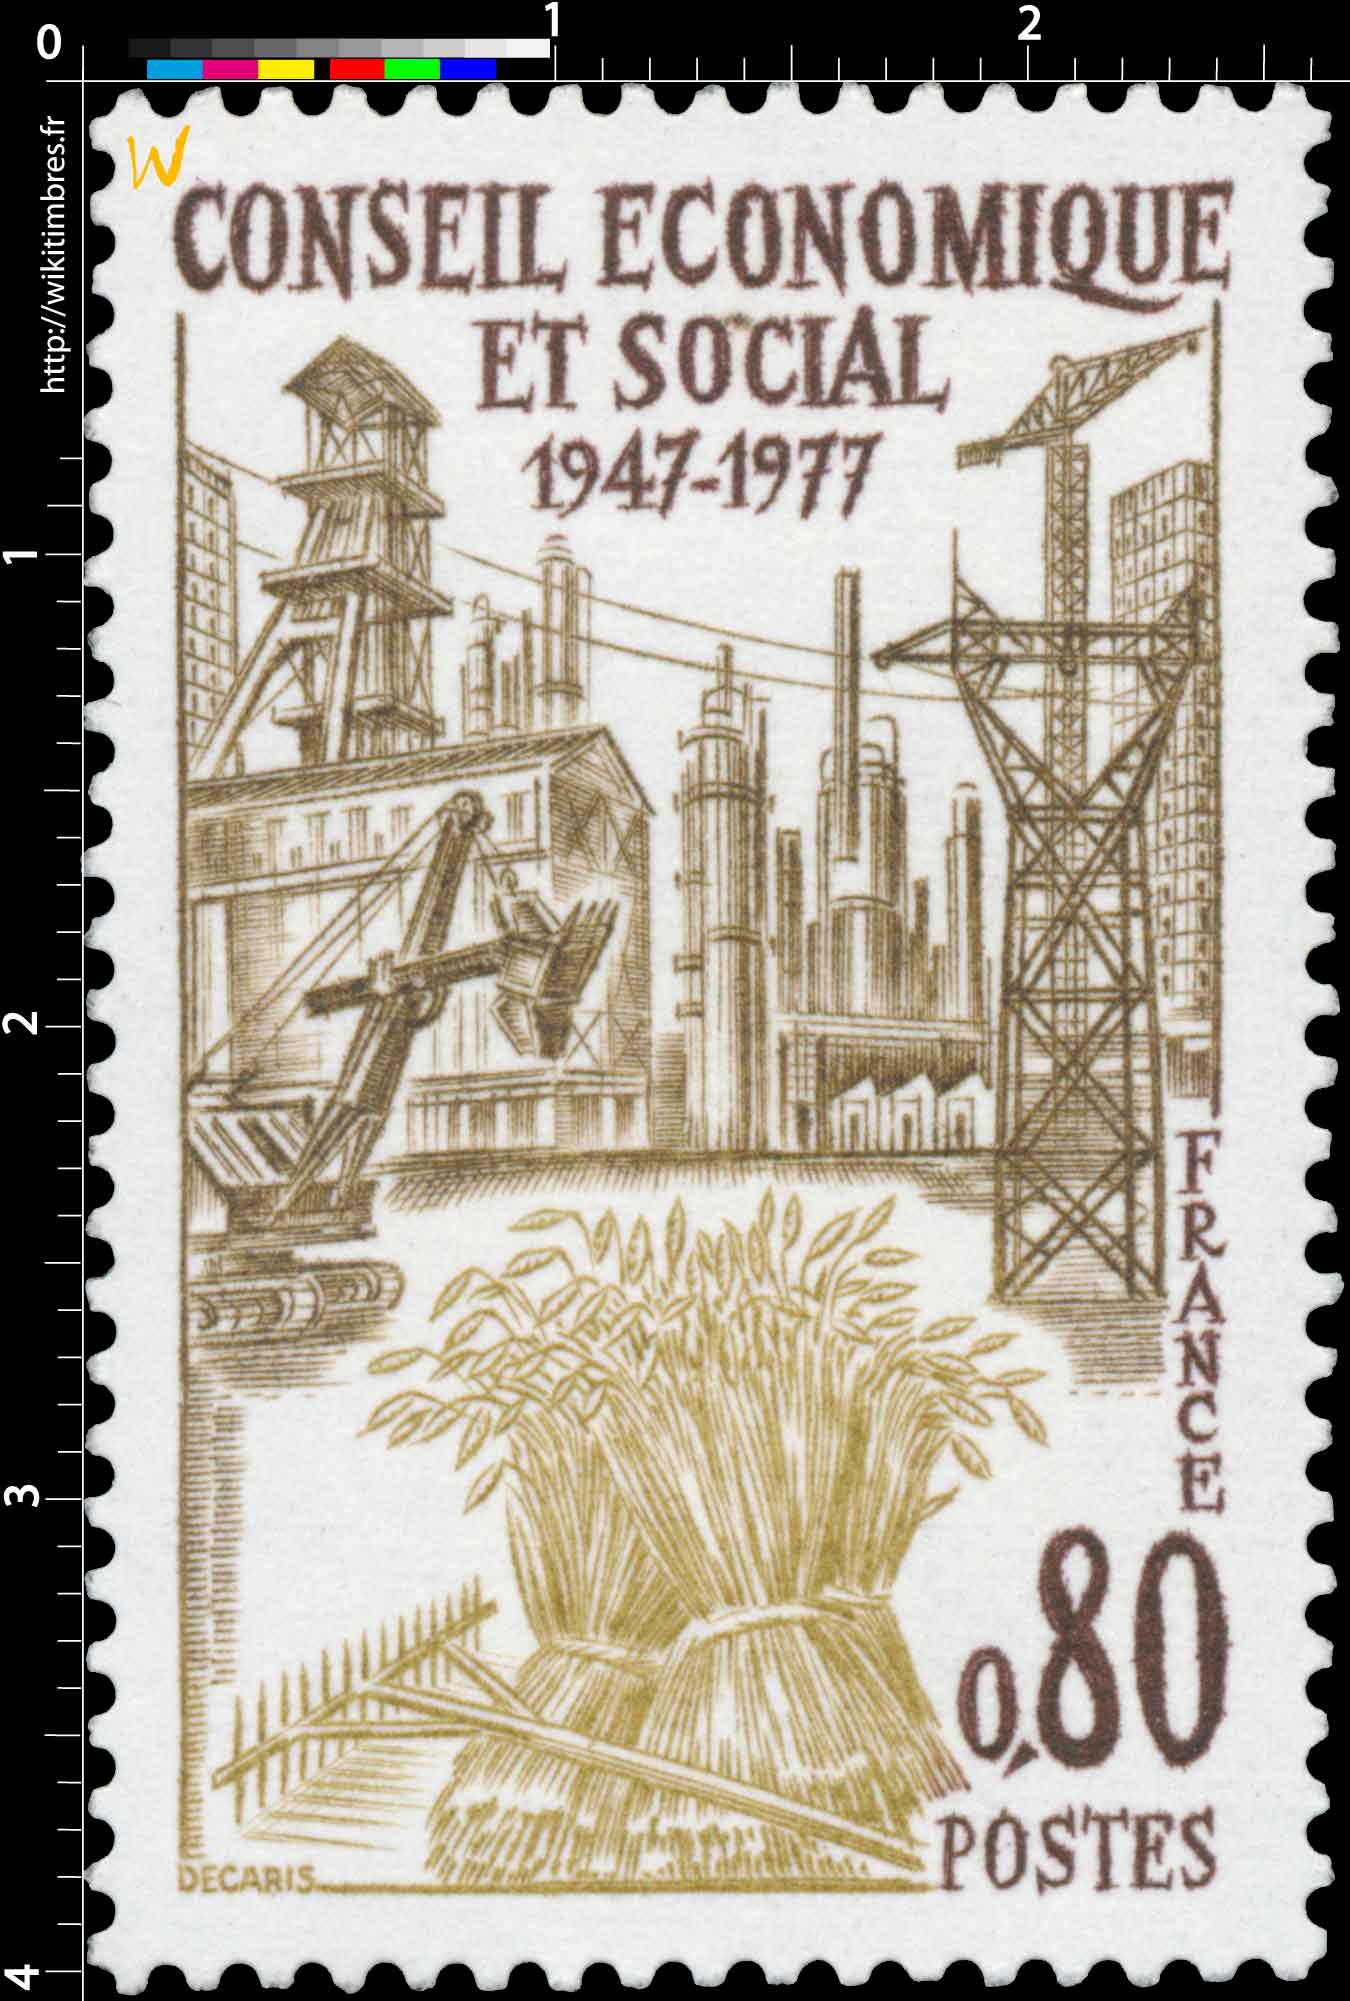 CONSEIL ÉCONOMIQUE ET SOCIAL 1947-1977